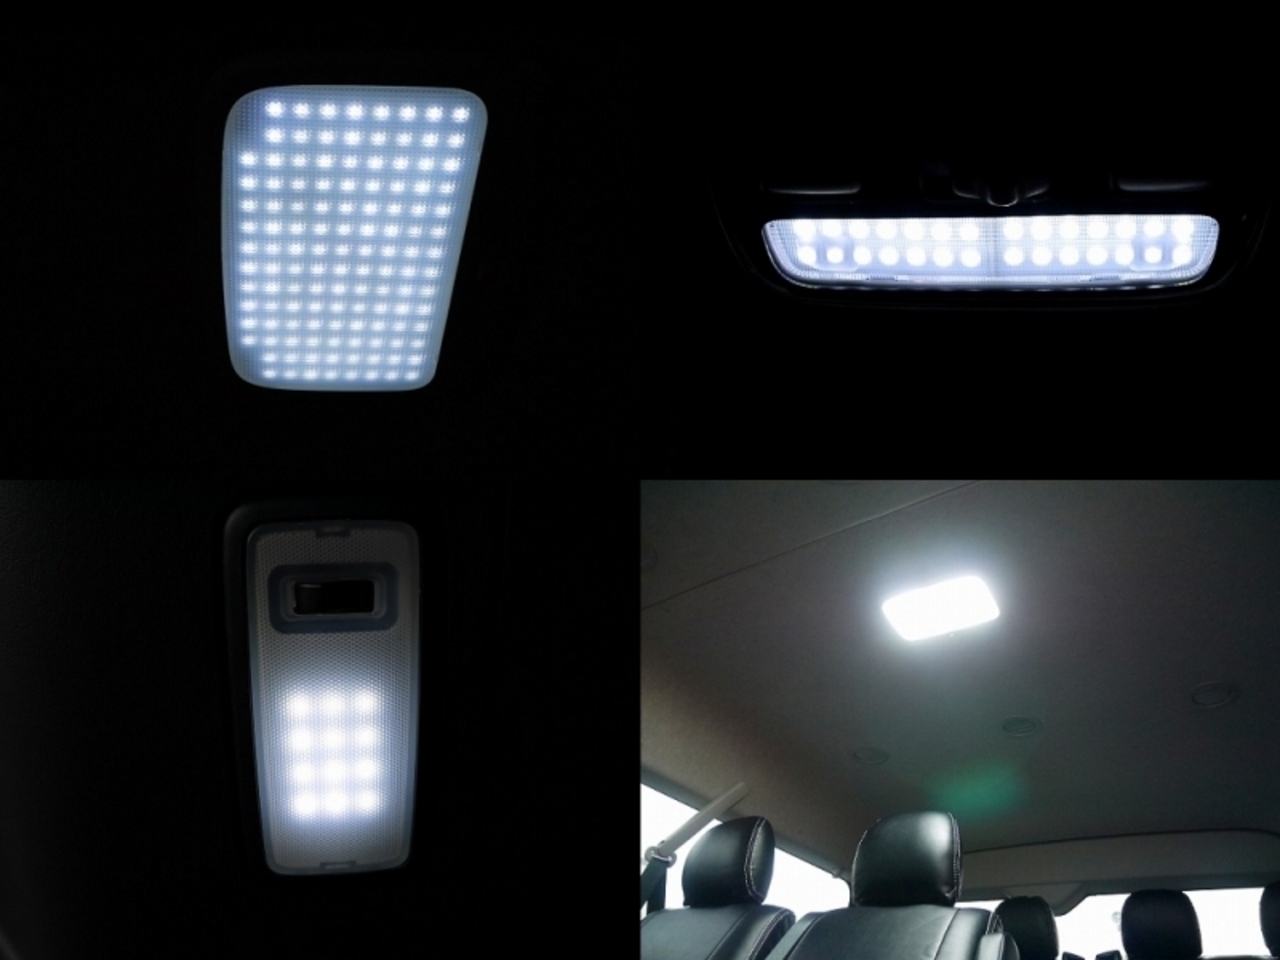 ハイエースワイドボディーバン ライトキャンピングカー【FD-BOX V08-M】 LEDルームランプセットは標準装備